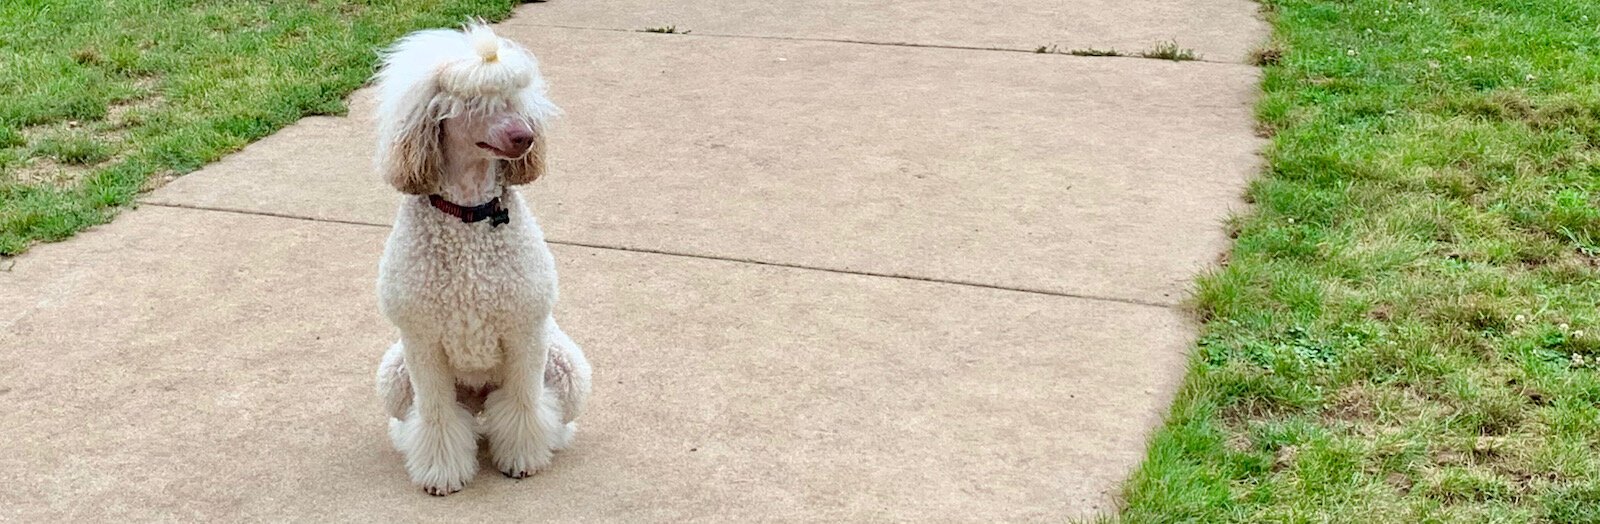 Maisie, the poodle, at Fairmount Dog Park.